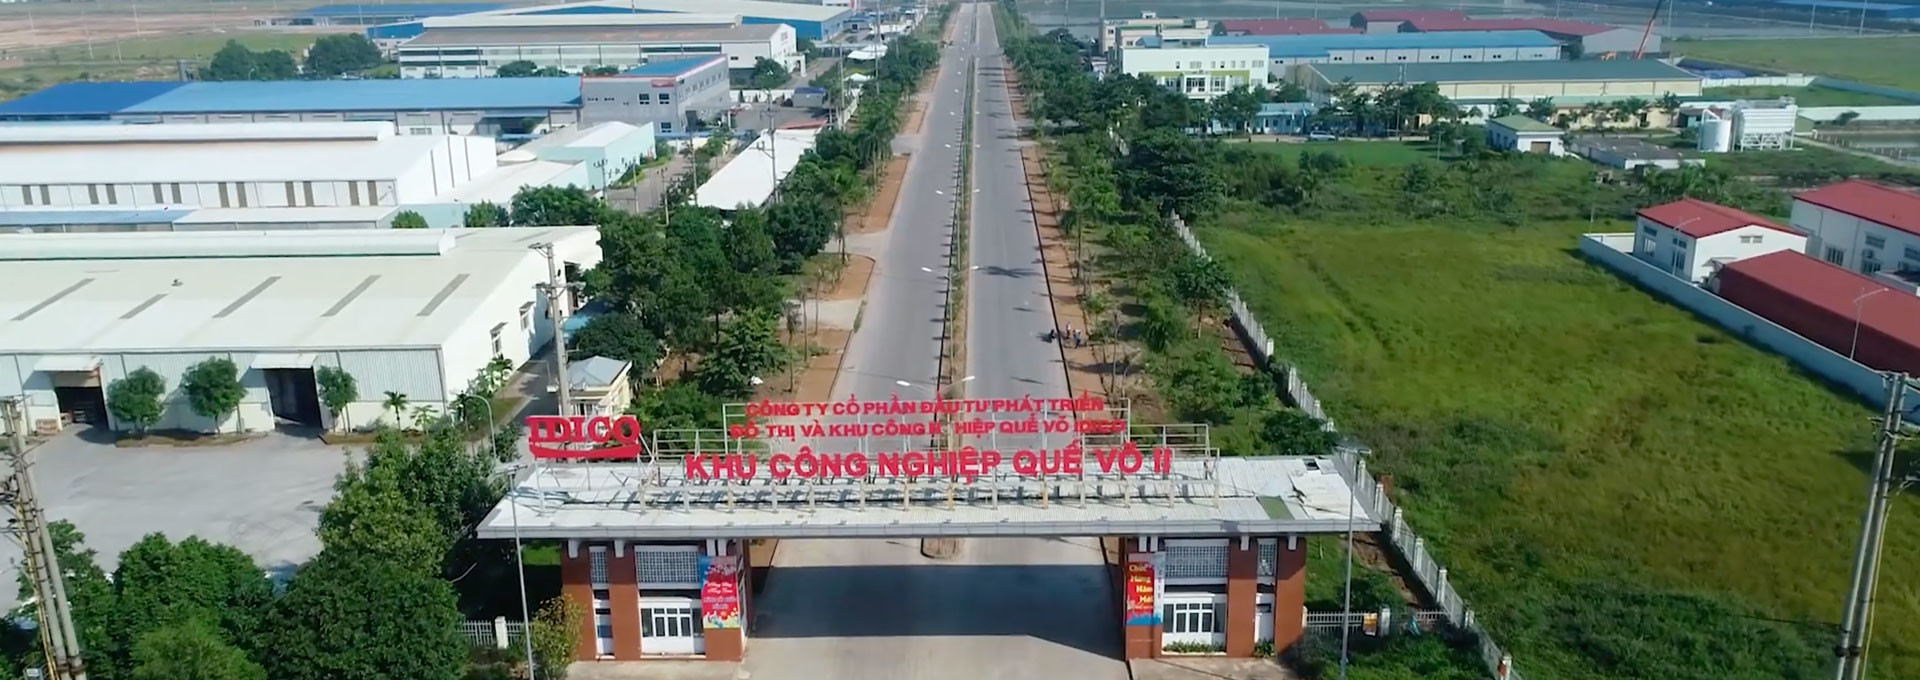 Vành đai 4 Hà Nội: Giảm tải nội đô, tạo động lực phát triển kinh tế vùng lân cận - Ảnh 5.